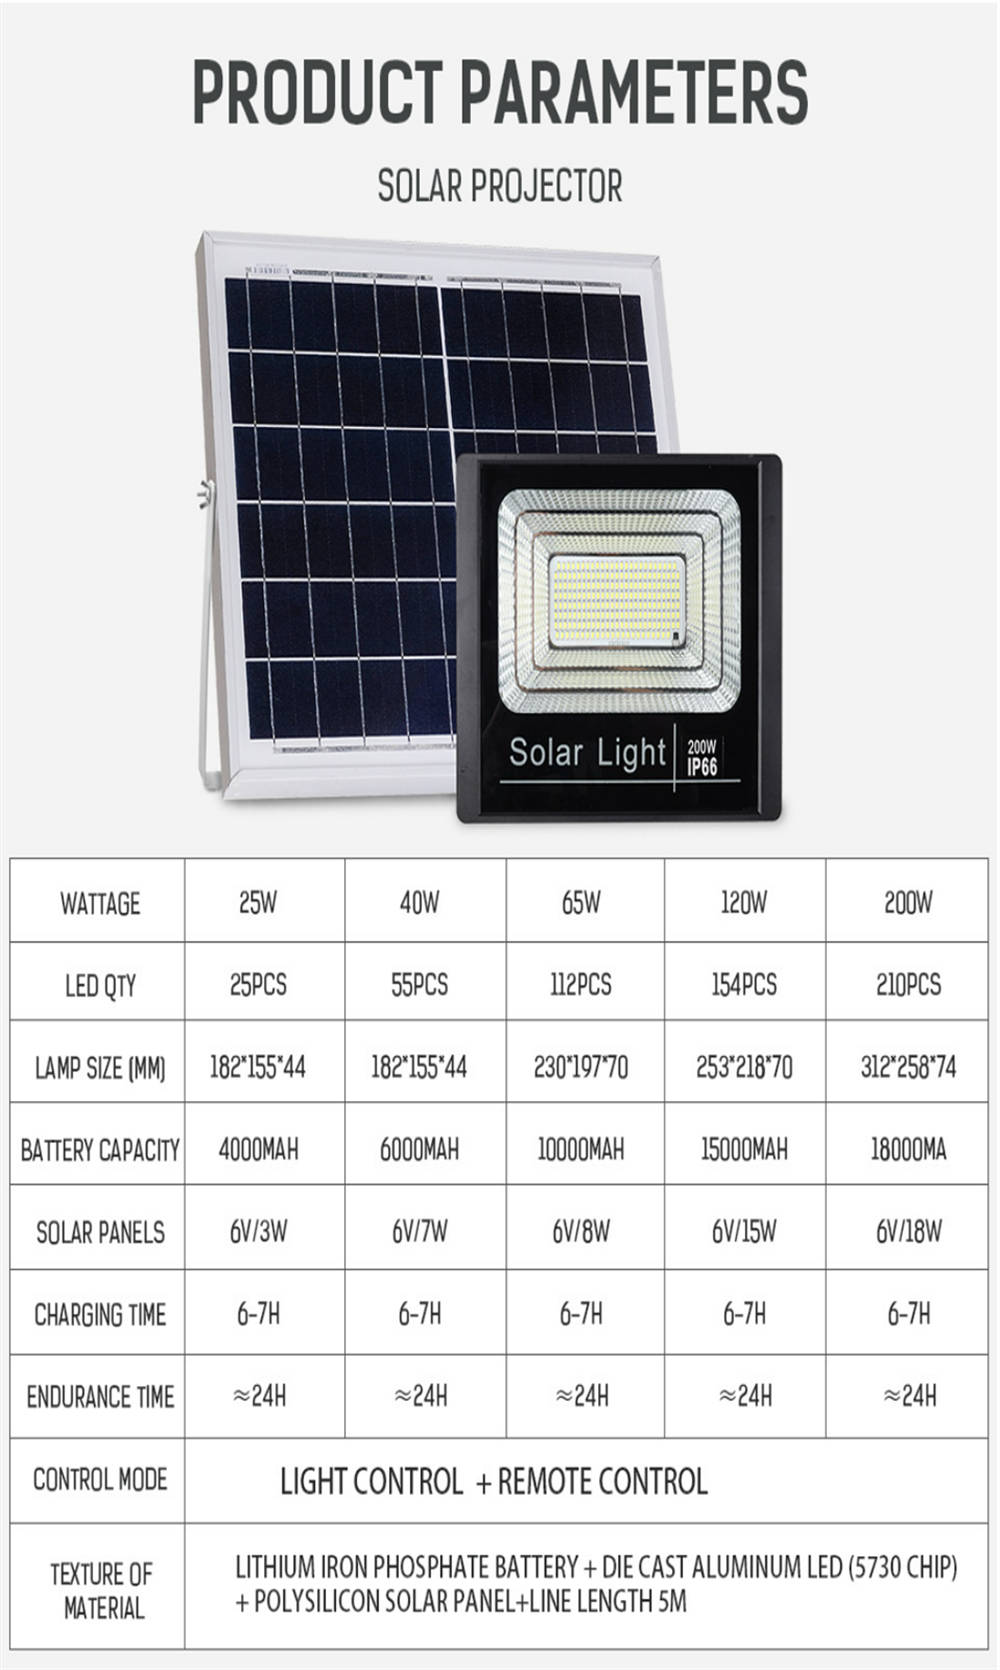 નવી આઉટડોર લાઇટિંગ ફિક્સ્ચર ફ્લડ લાઇટ સોલર બેટરી ડેકોરેટિવ ગાર્ડન સ્ટ્રીટ લેમ્પ 40W આઉટડોર LED ફ્લડ લાઇટ ફોર ગાર્ડન (6)